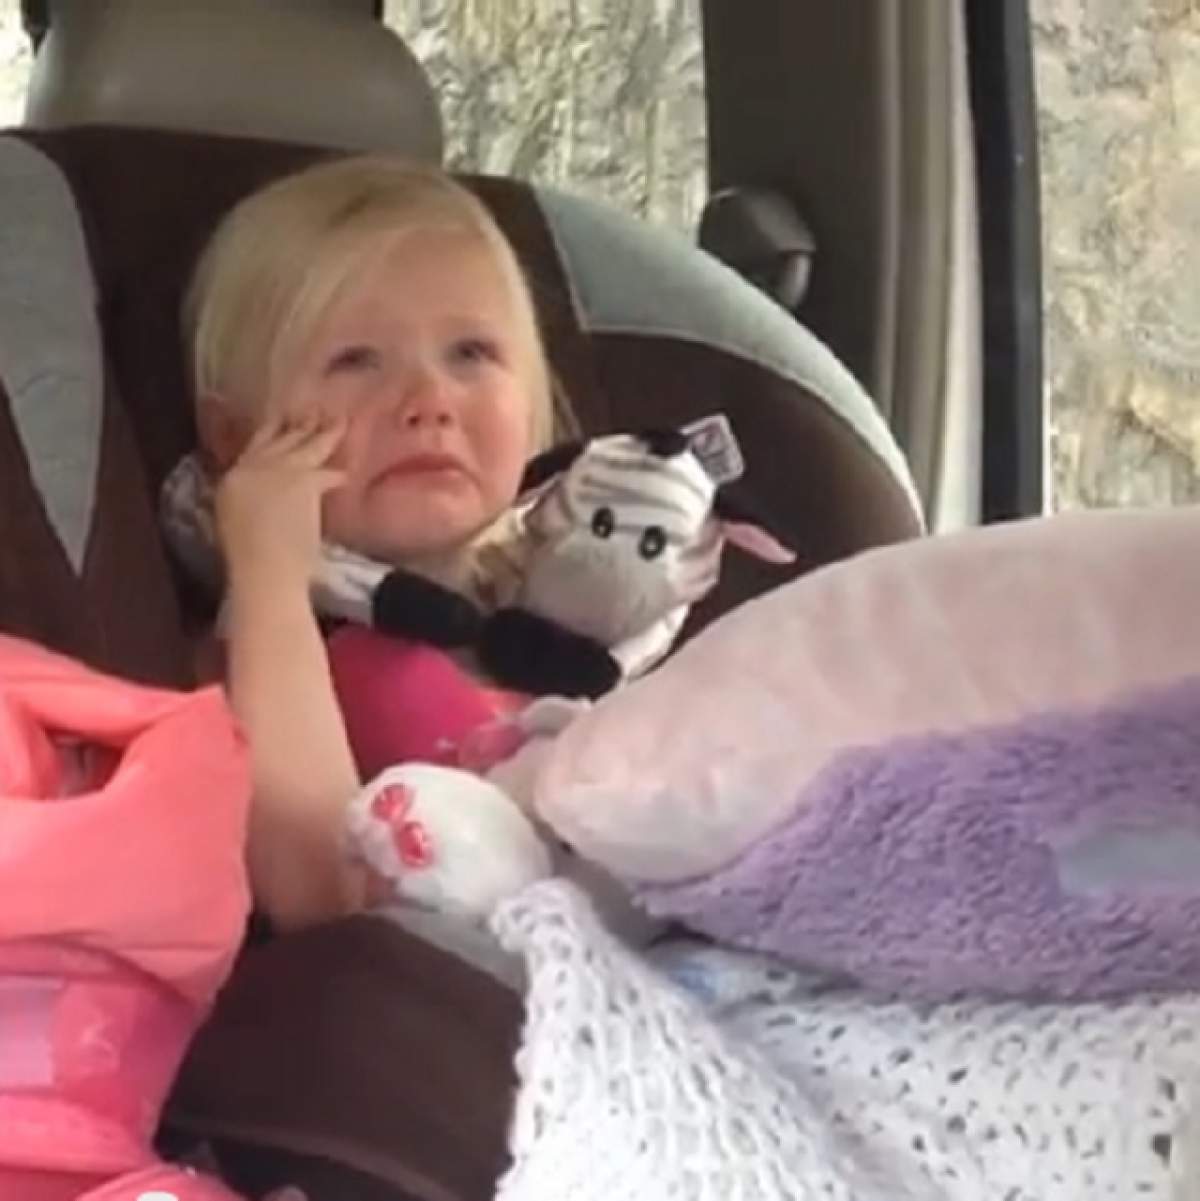 VIDEO / Nu-ţi vei imagina niciodată de ce plânge această fetiţă! Reacţia ei a surprins o lume